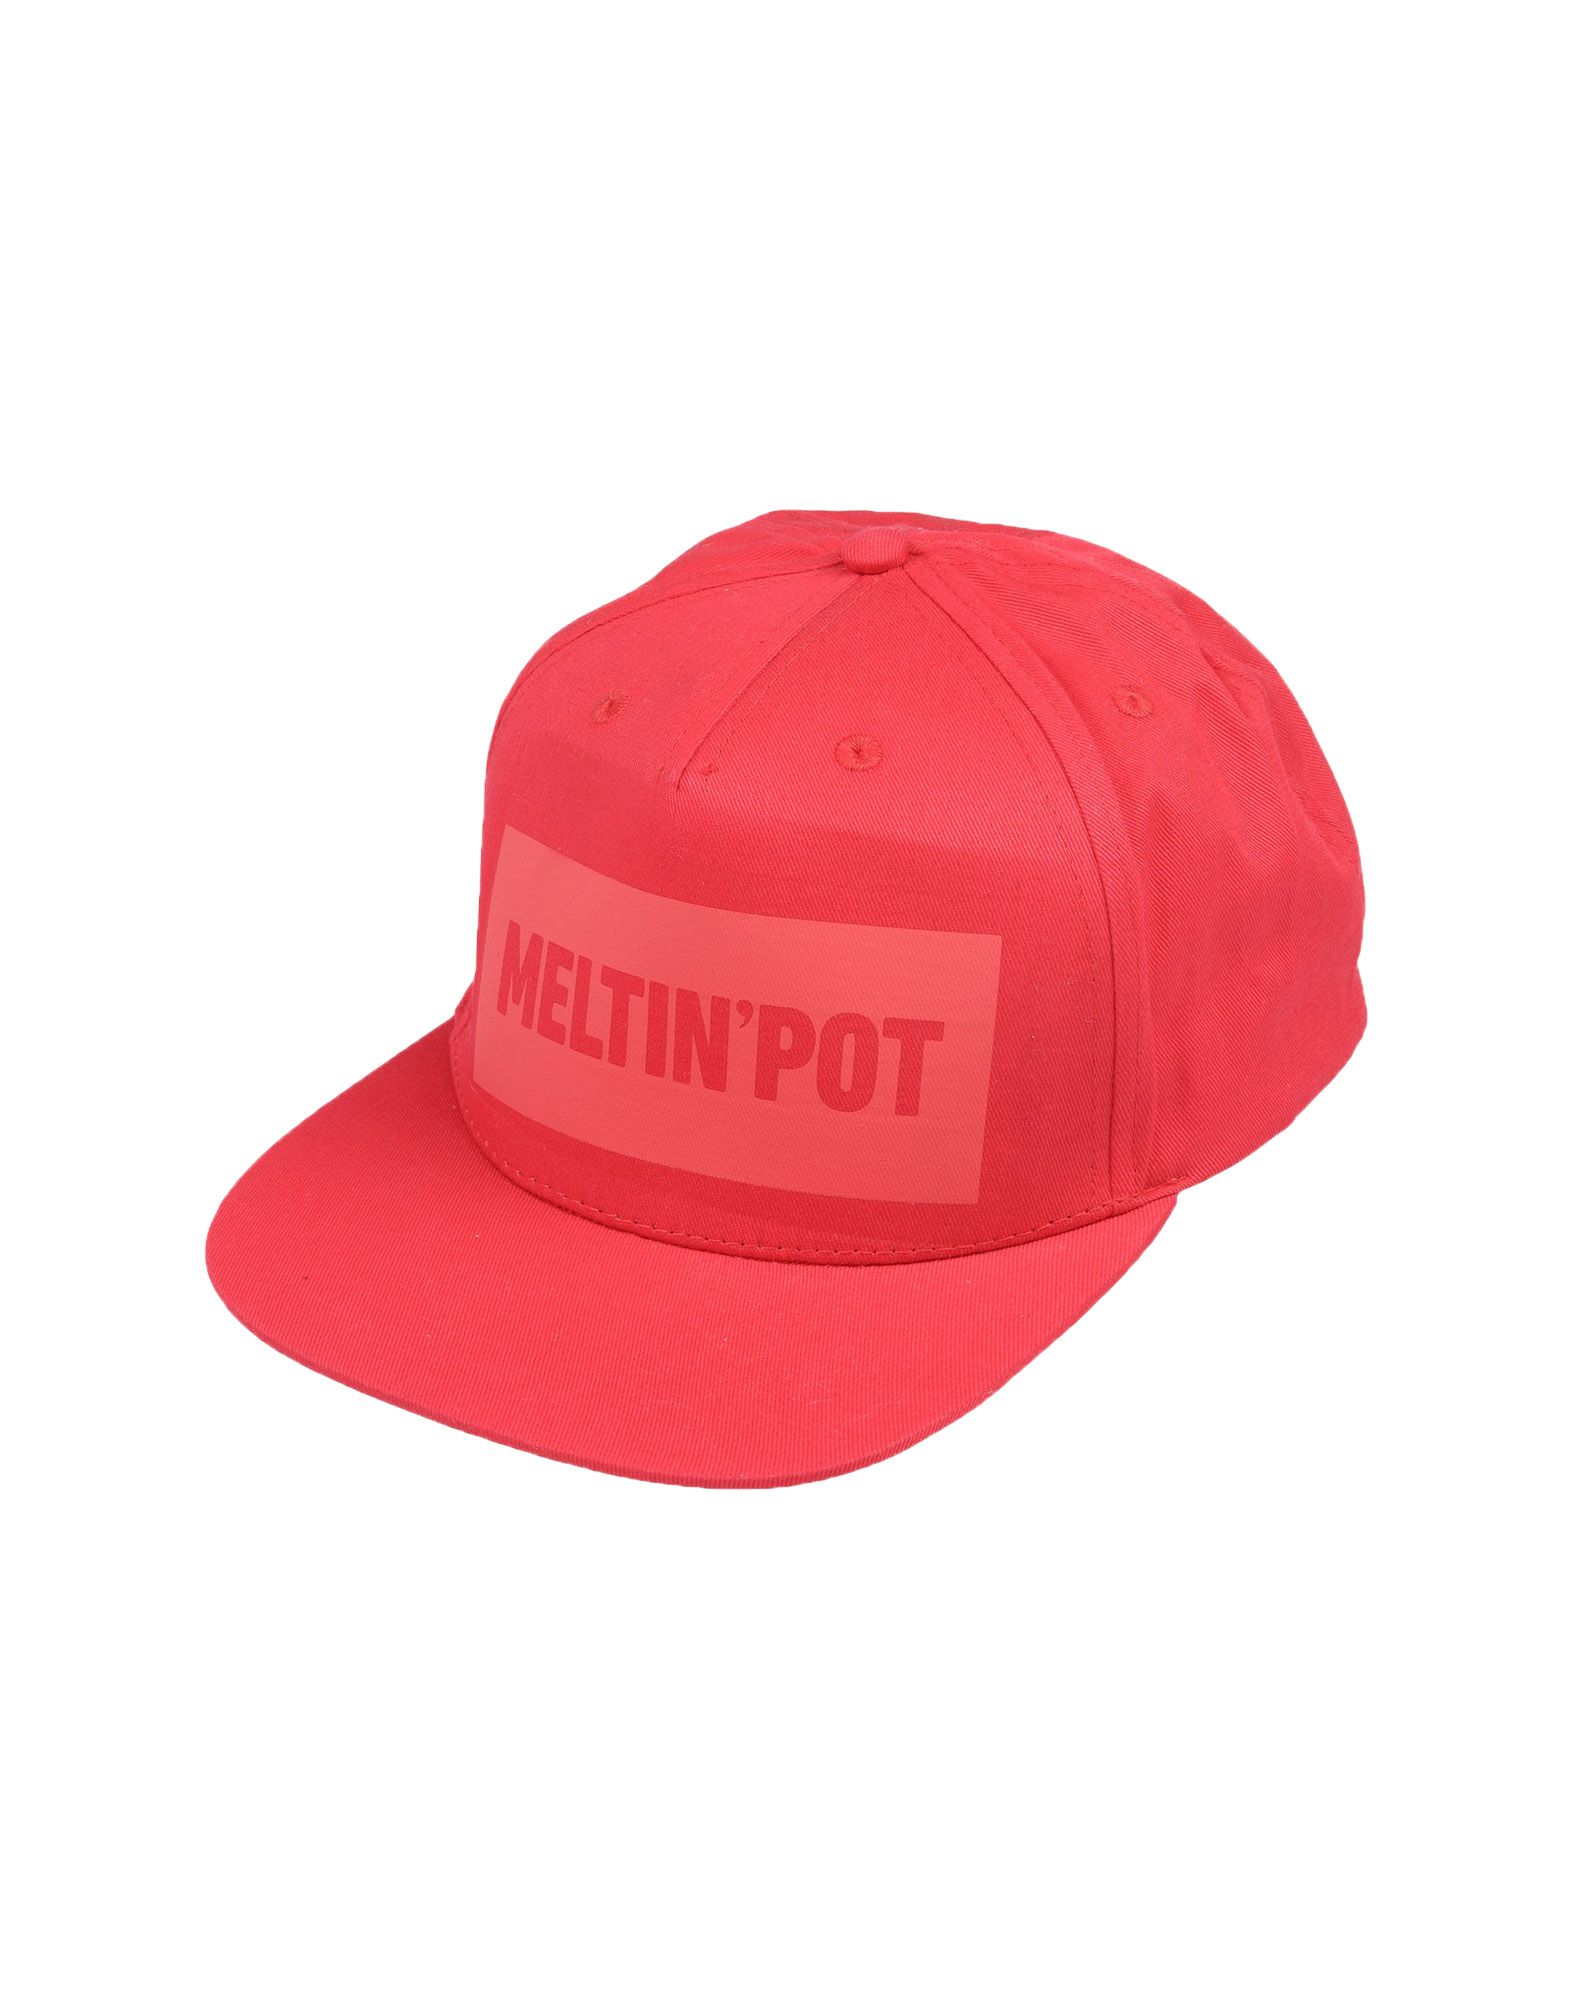 《送料無料》MELTIN POT メンズ 帽子 レッド one size コットン 100%